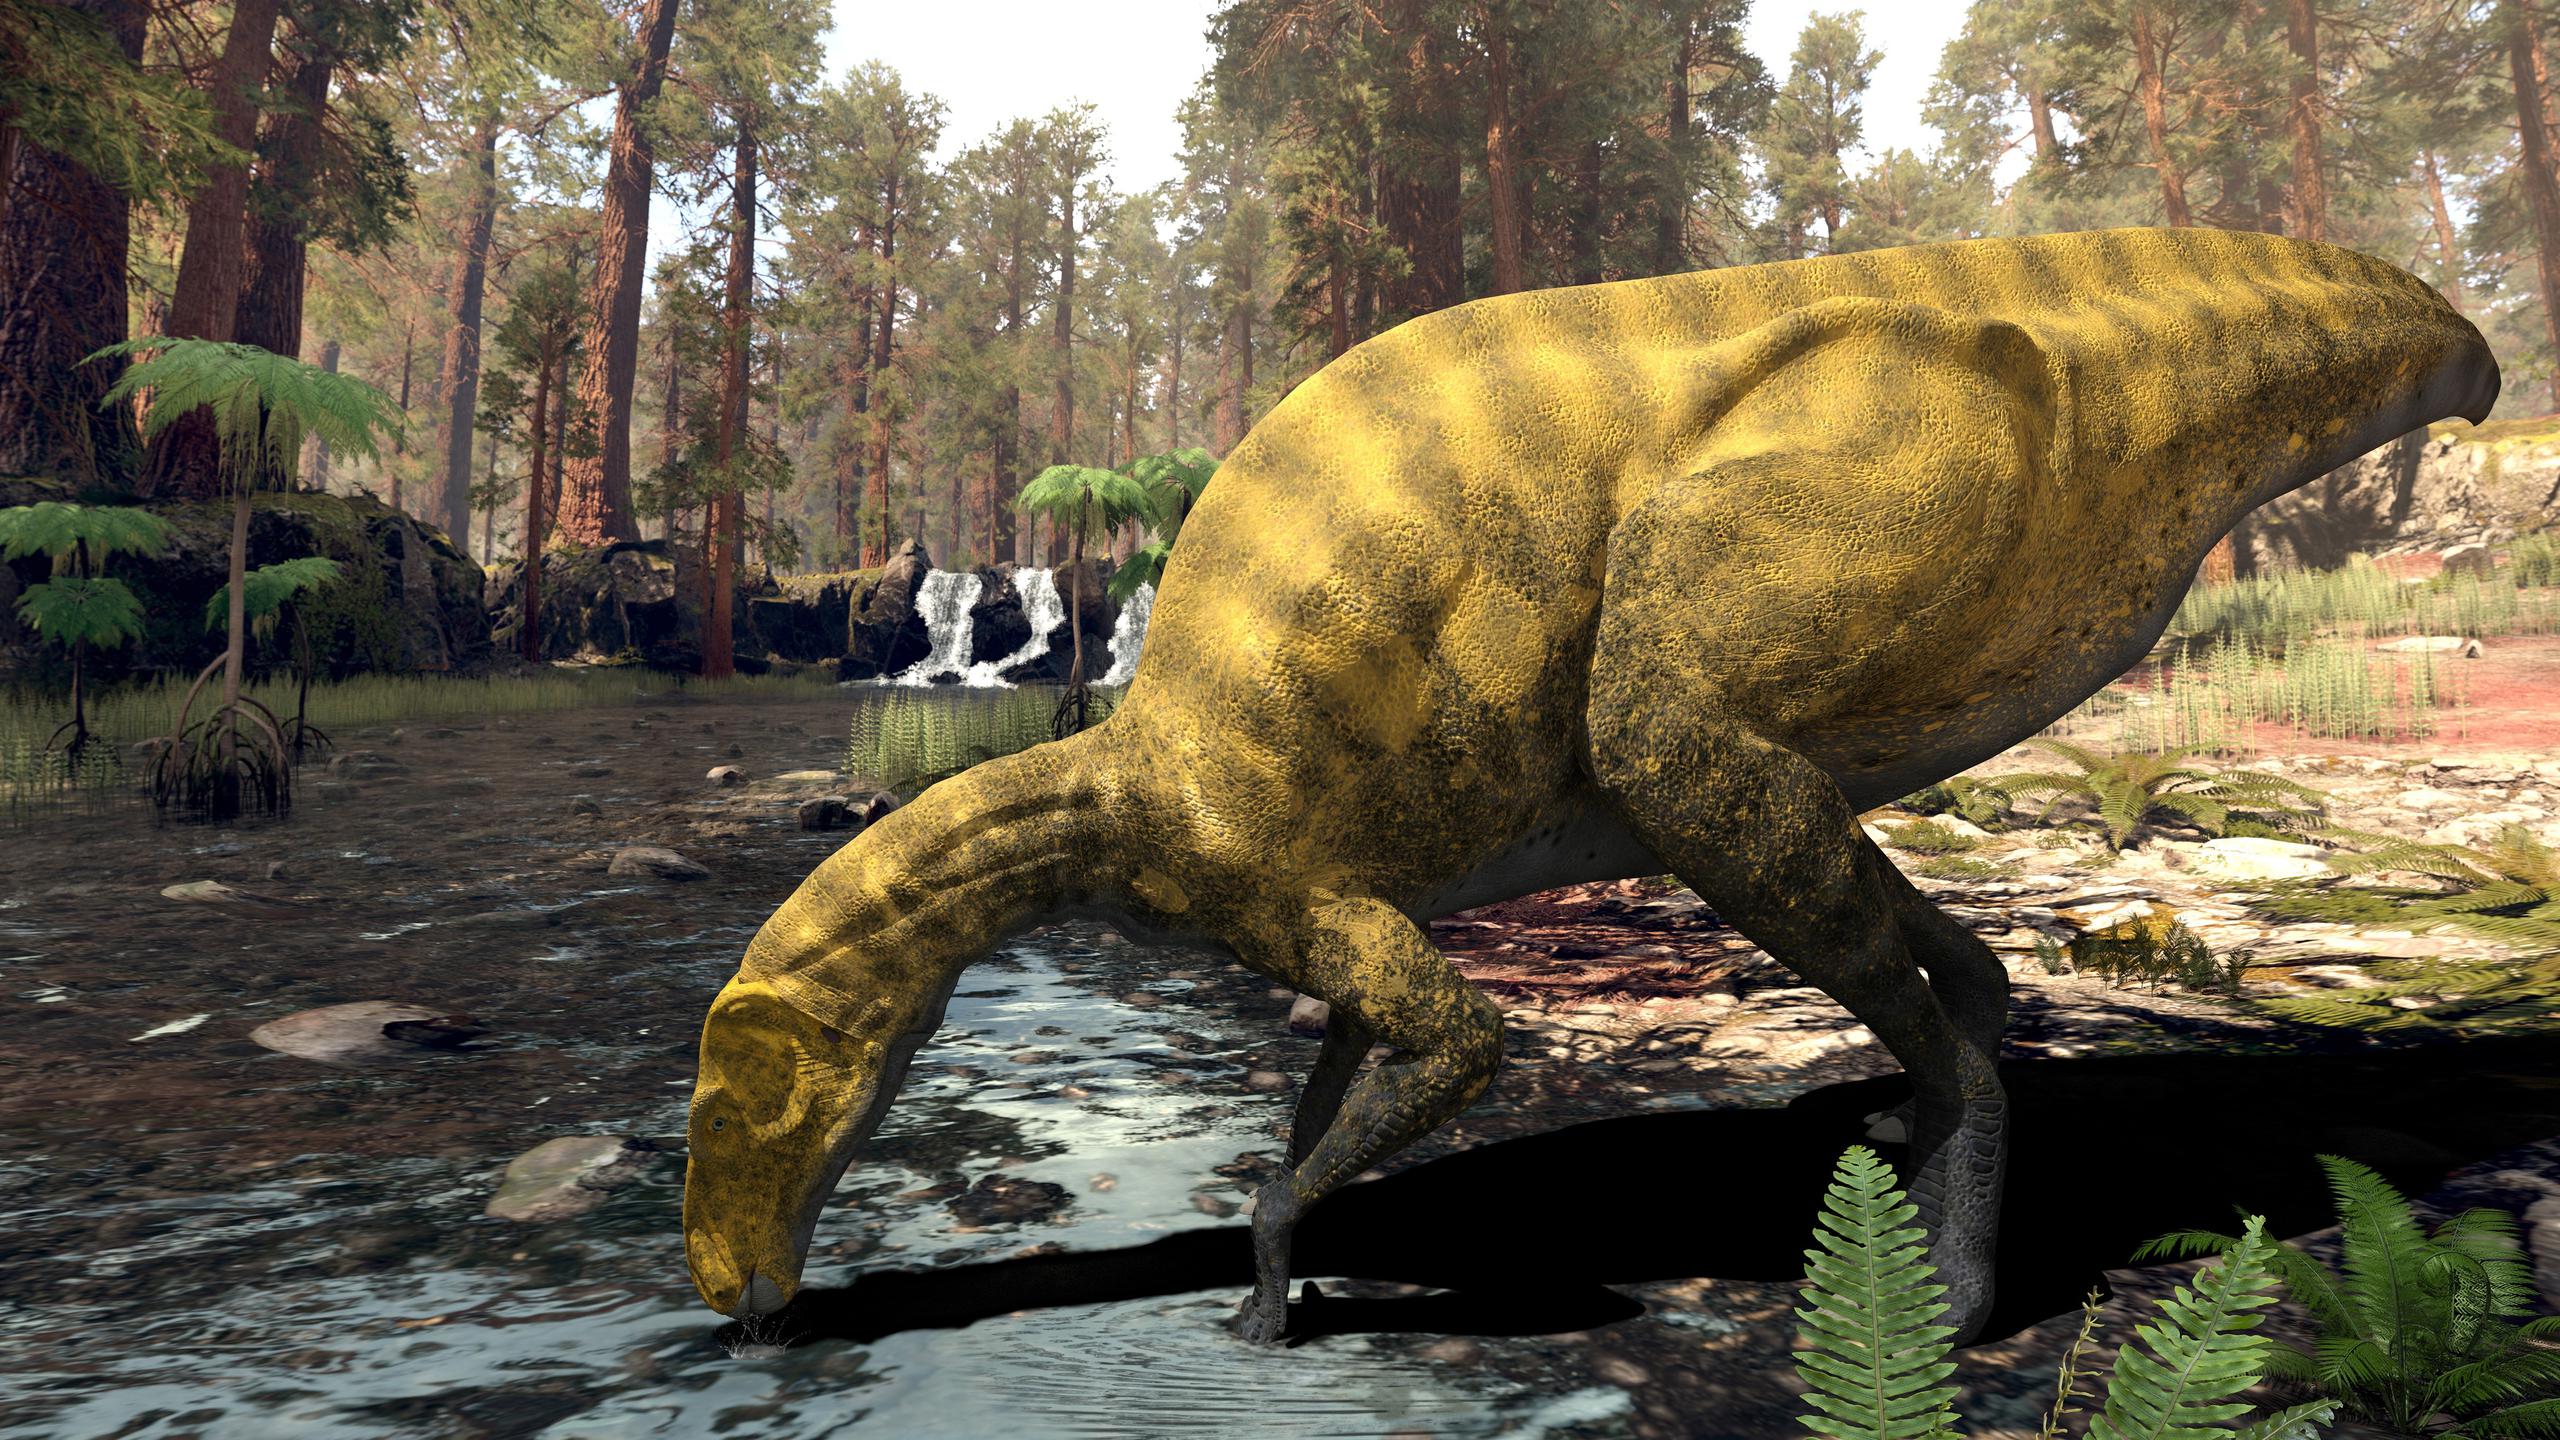 Recreación del nuevo dinosaurio, parecido a un "iguanodon" (iguana gigante), a partir de los restos fósiles que se han encontrado en uno de los yacimientos de Portell, en Castellón. PLOS ONE/Andrés Santos-Cubedo